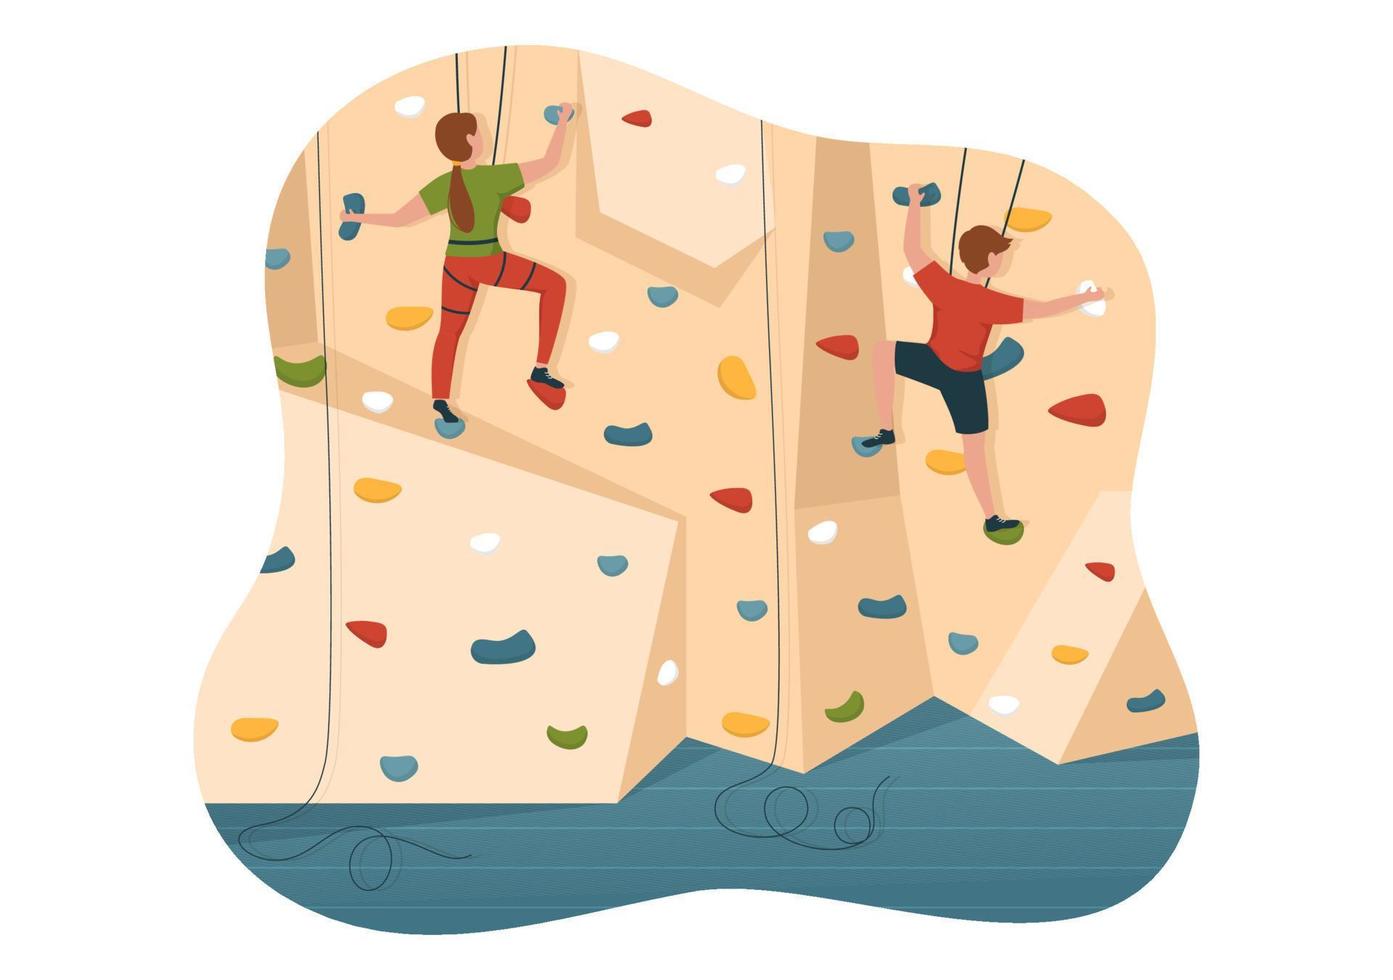 ilustración de escalada de acantilados con escalador escalar pared de roca o acantilados de montaña y deporte de actividad extrema en plantilla dibujada a mano de dibujos animados planos vector